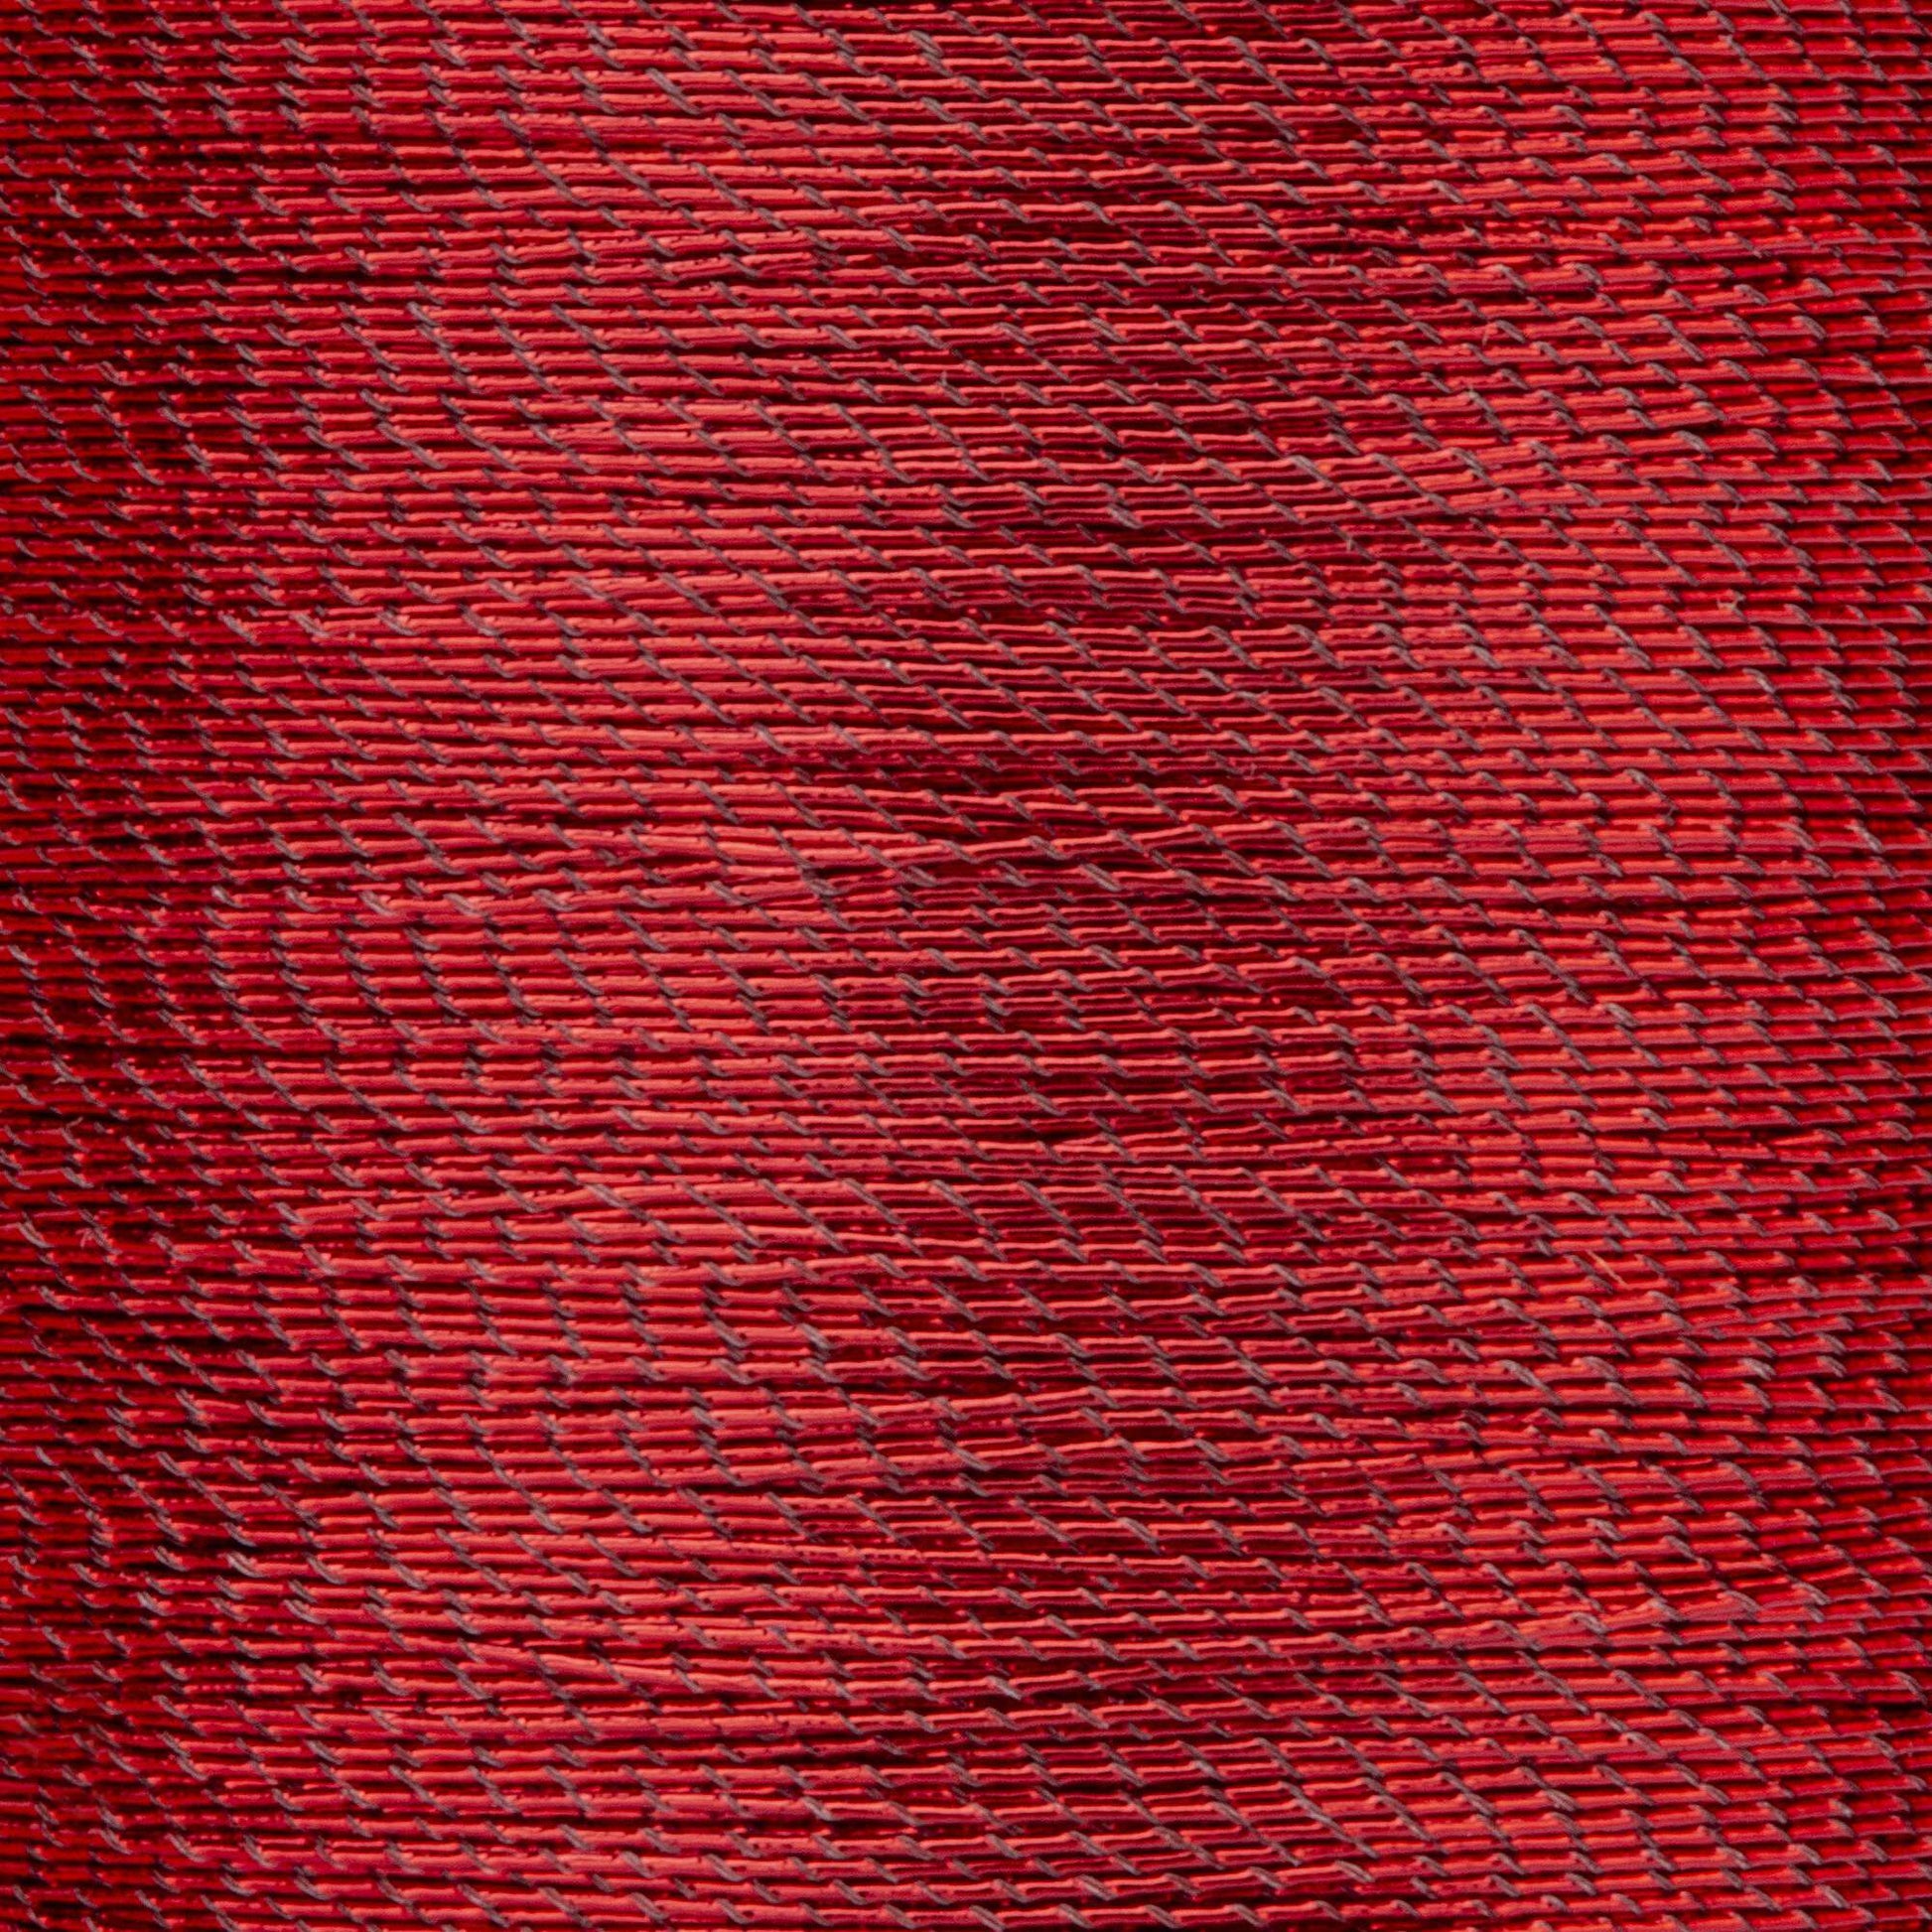 Coats & Clark Metallic Embroidery Thread (125 Yards)